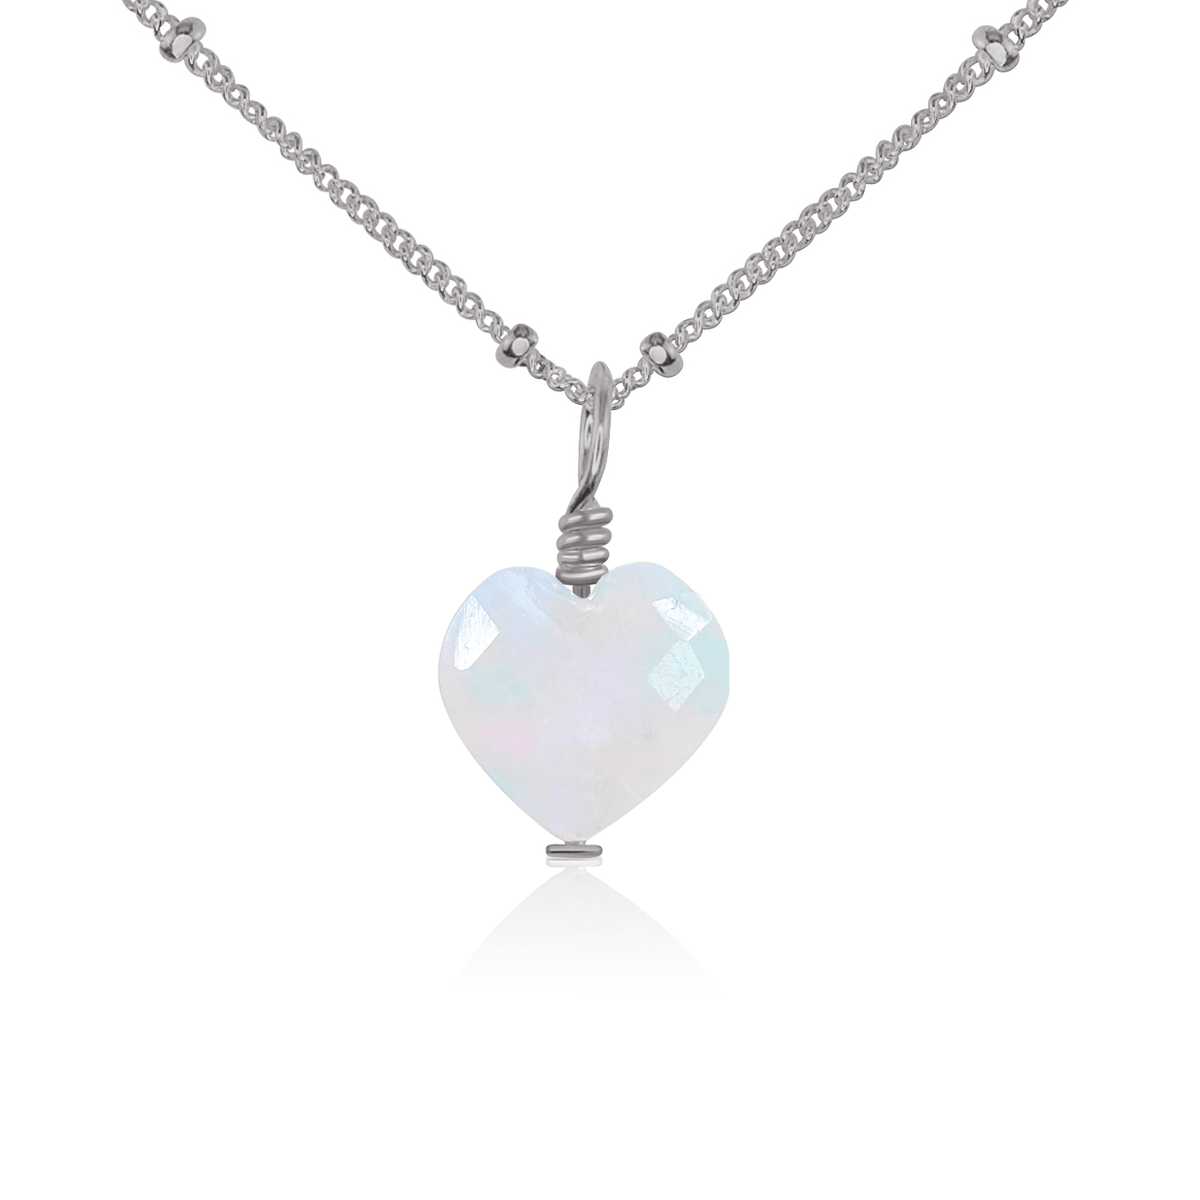 Rainbow Moonstone Crystal Heart Pendant Necklace - Rainbow Moonstone Crystal Heart Pendant Necklace - Stainless Steel / Satellite - Luna Tide Handmade Crystal Jewellery